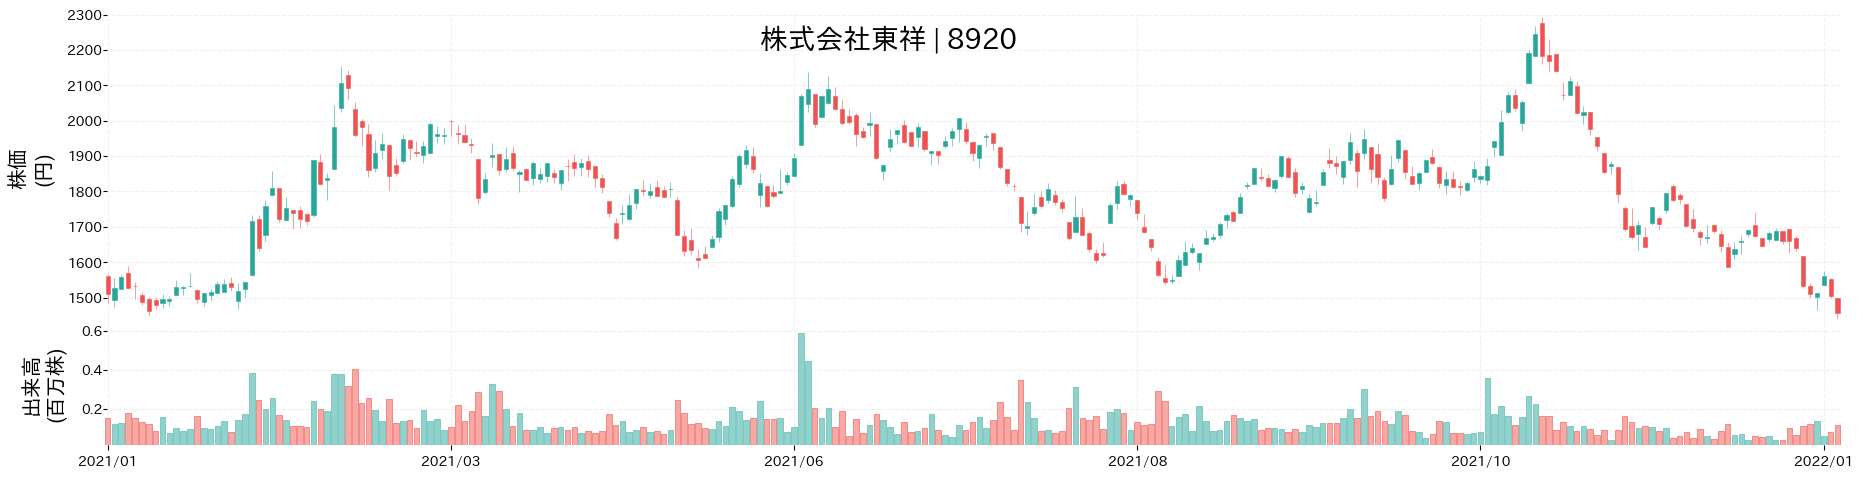 東祥の株価推移(2021)